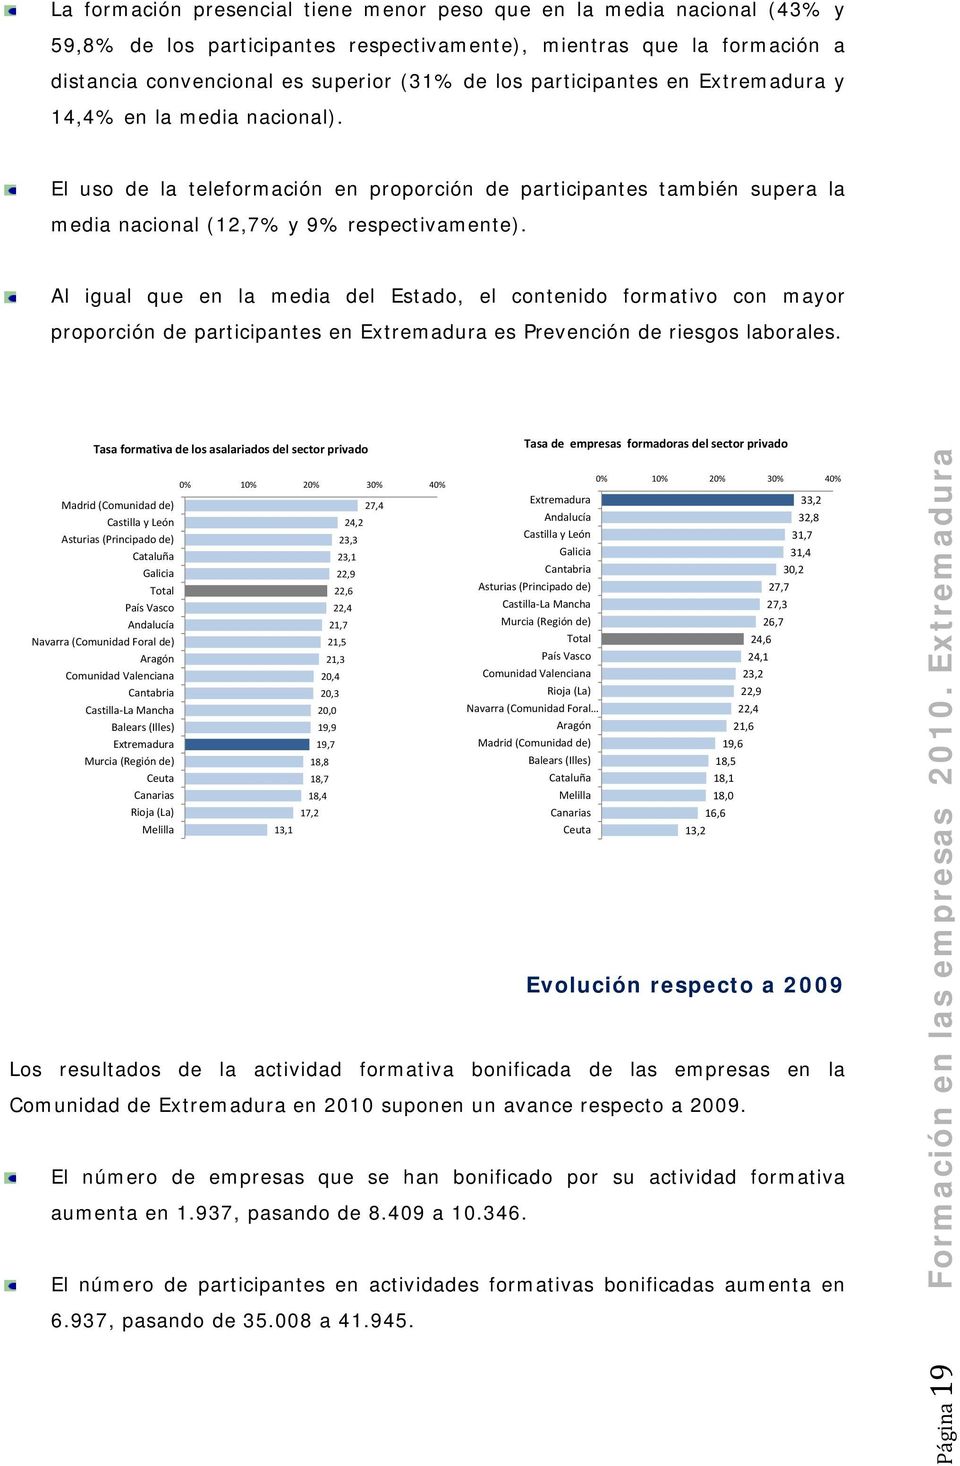 Al igual que en la media del Estado, el contenido formativo con mayor proporción de participantes en Extremadura es Prevención de riesgos laborales.